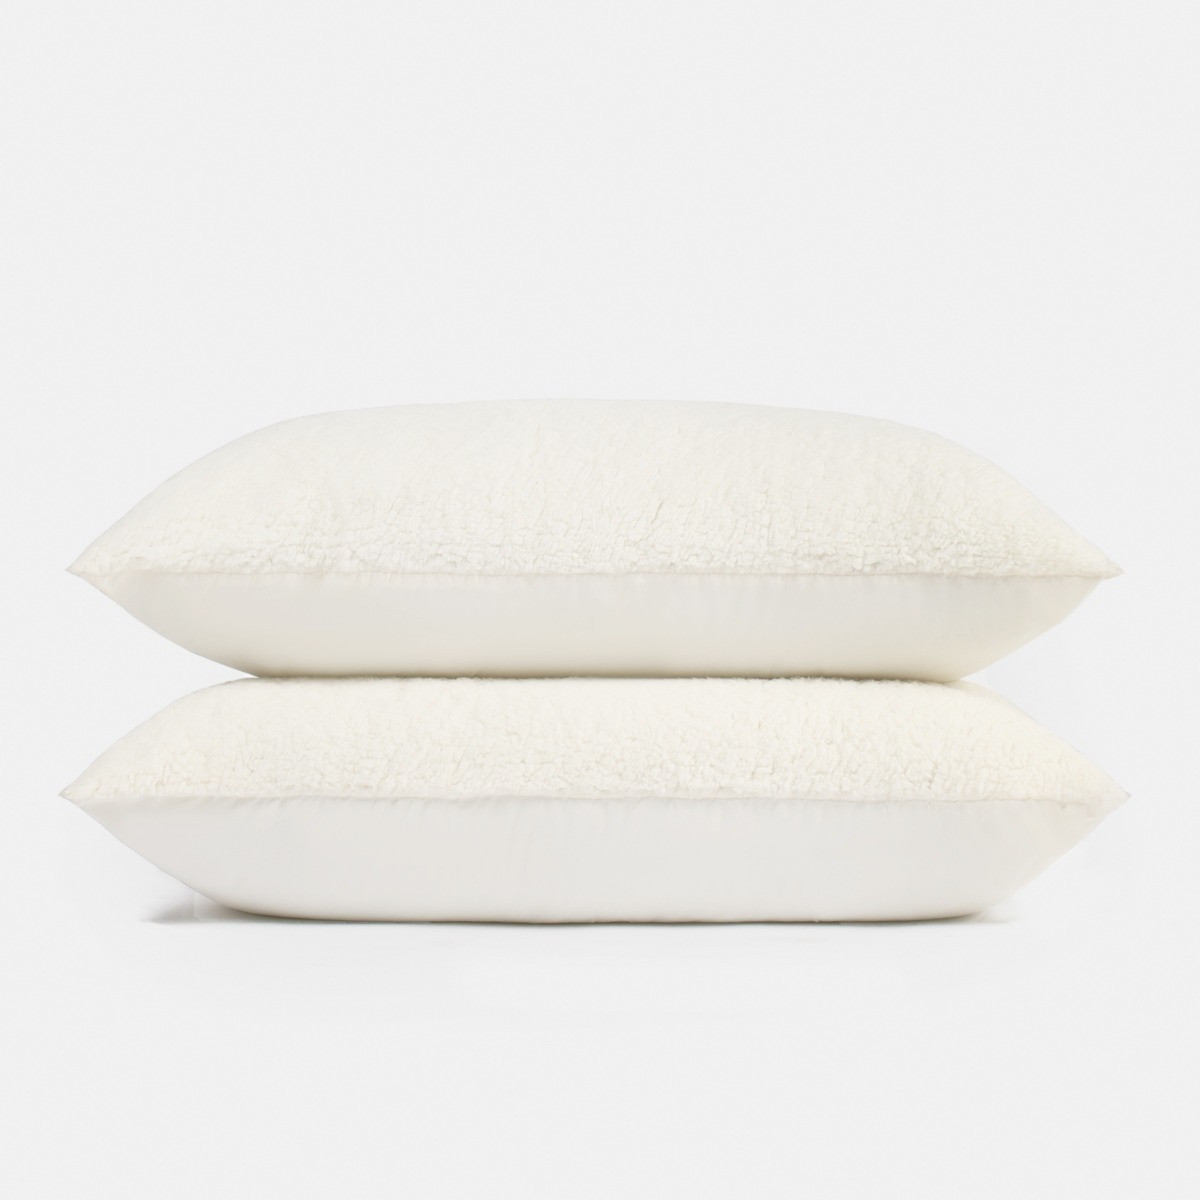 OHS Teddy Fleece Pillow - Cream>